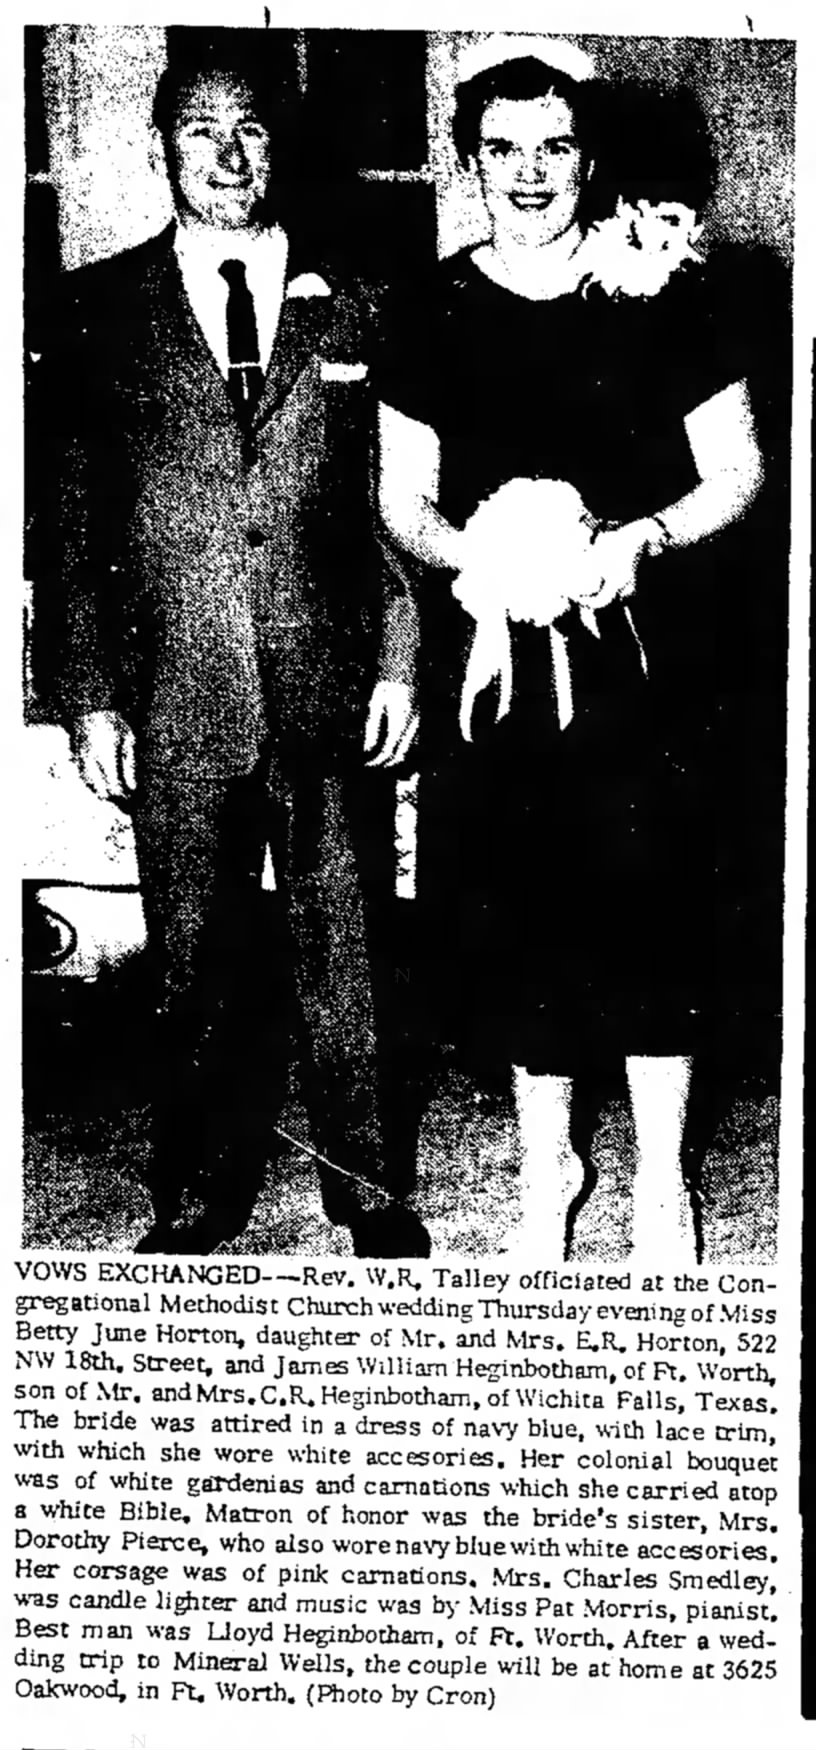 Grand Prairie Daily News (Grand Prairie, TX) 15 March 1959, page 6